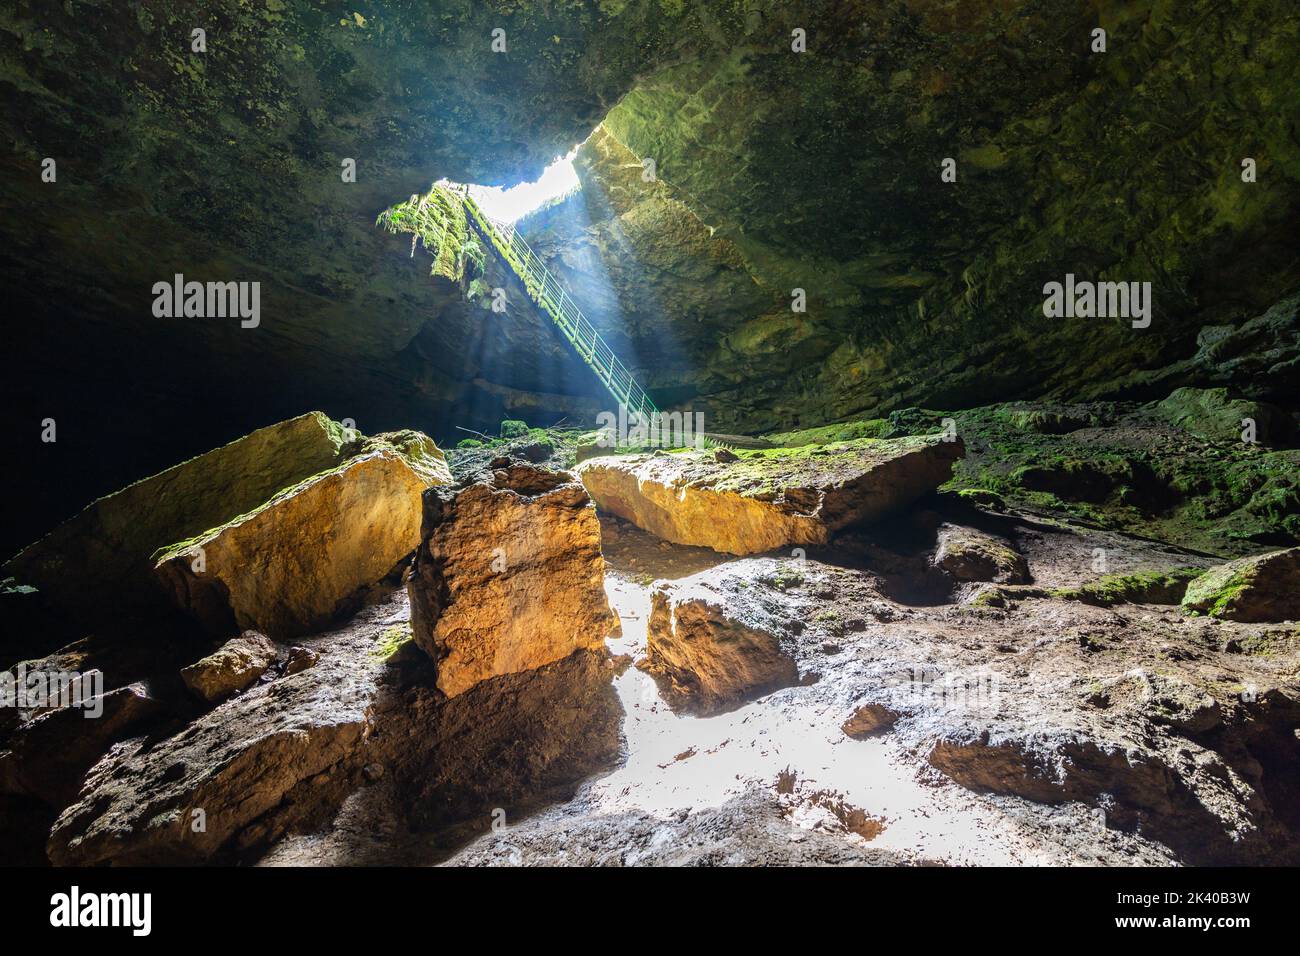 Grotte de Stalbitsata signifiant l'escalier, avec un trou sur le plafond. Entre le ciel et l'enfer concept. Il est situé près de la ville de Lovech en Bulgarie. Banque D'Images